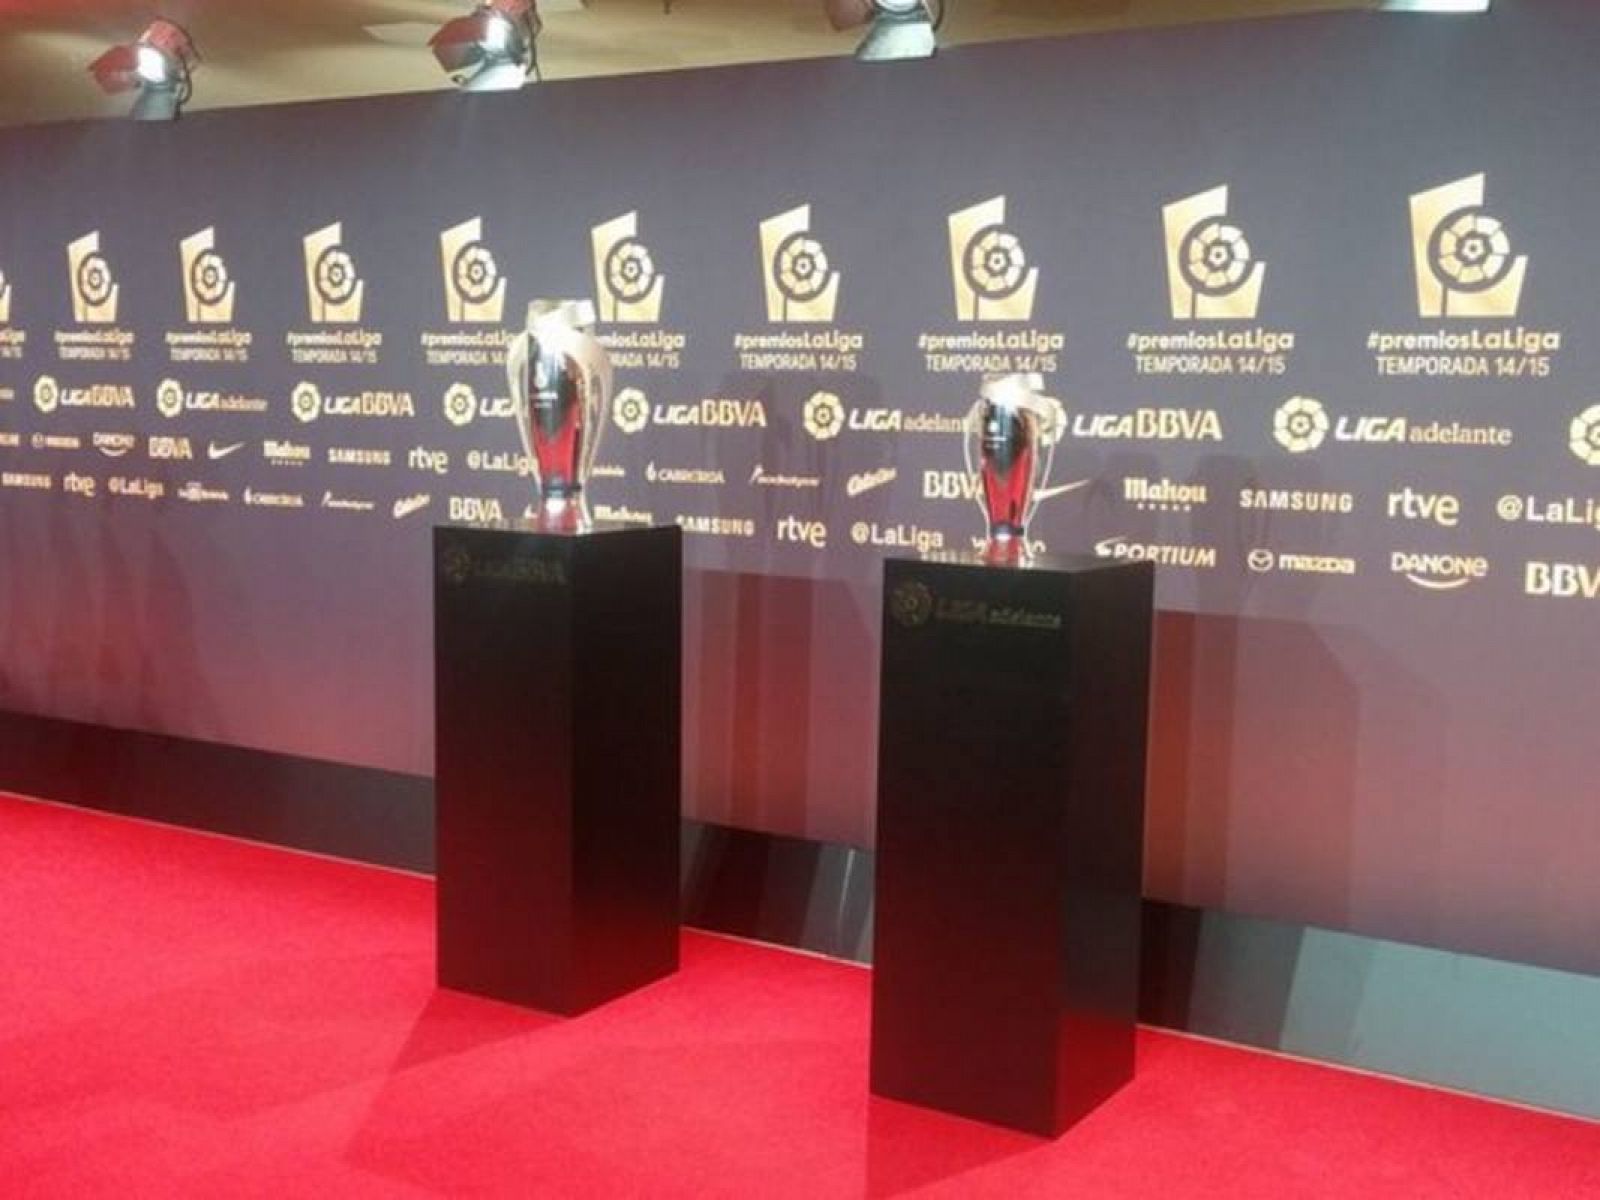 Los trofeos de los premios de La Liga Nacional de Fútbol Profesional de la temporada 2014-15.